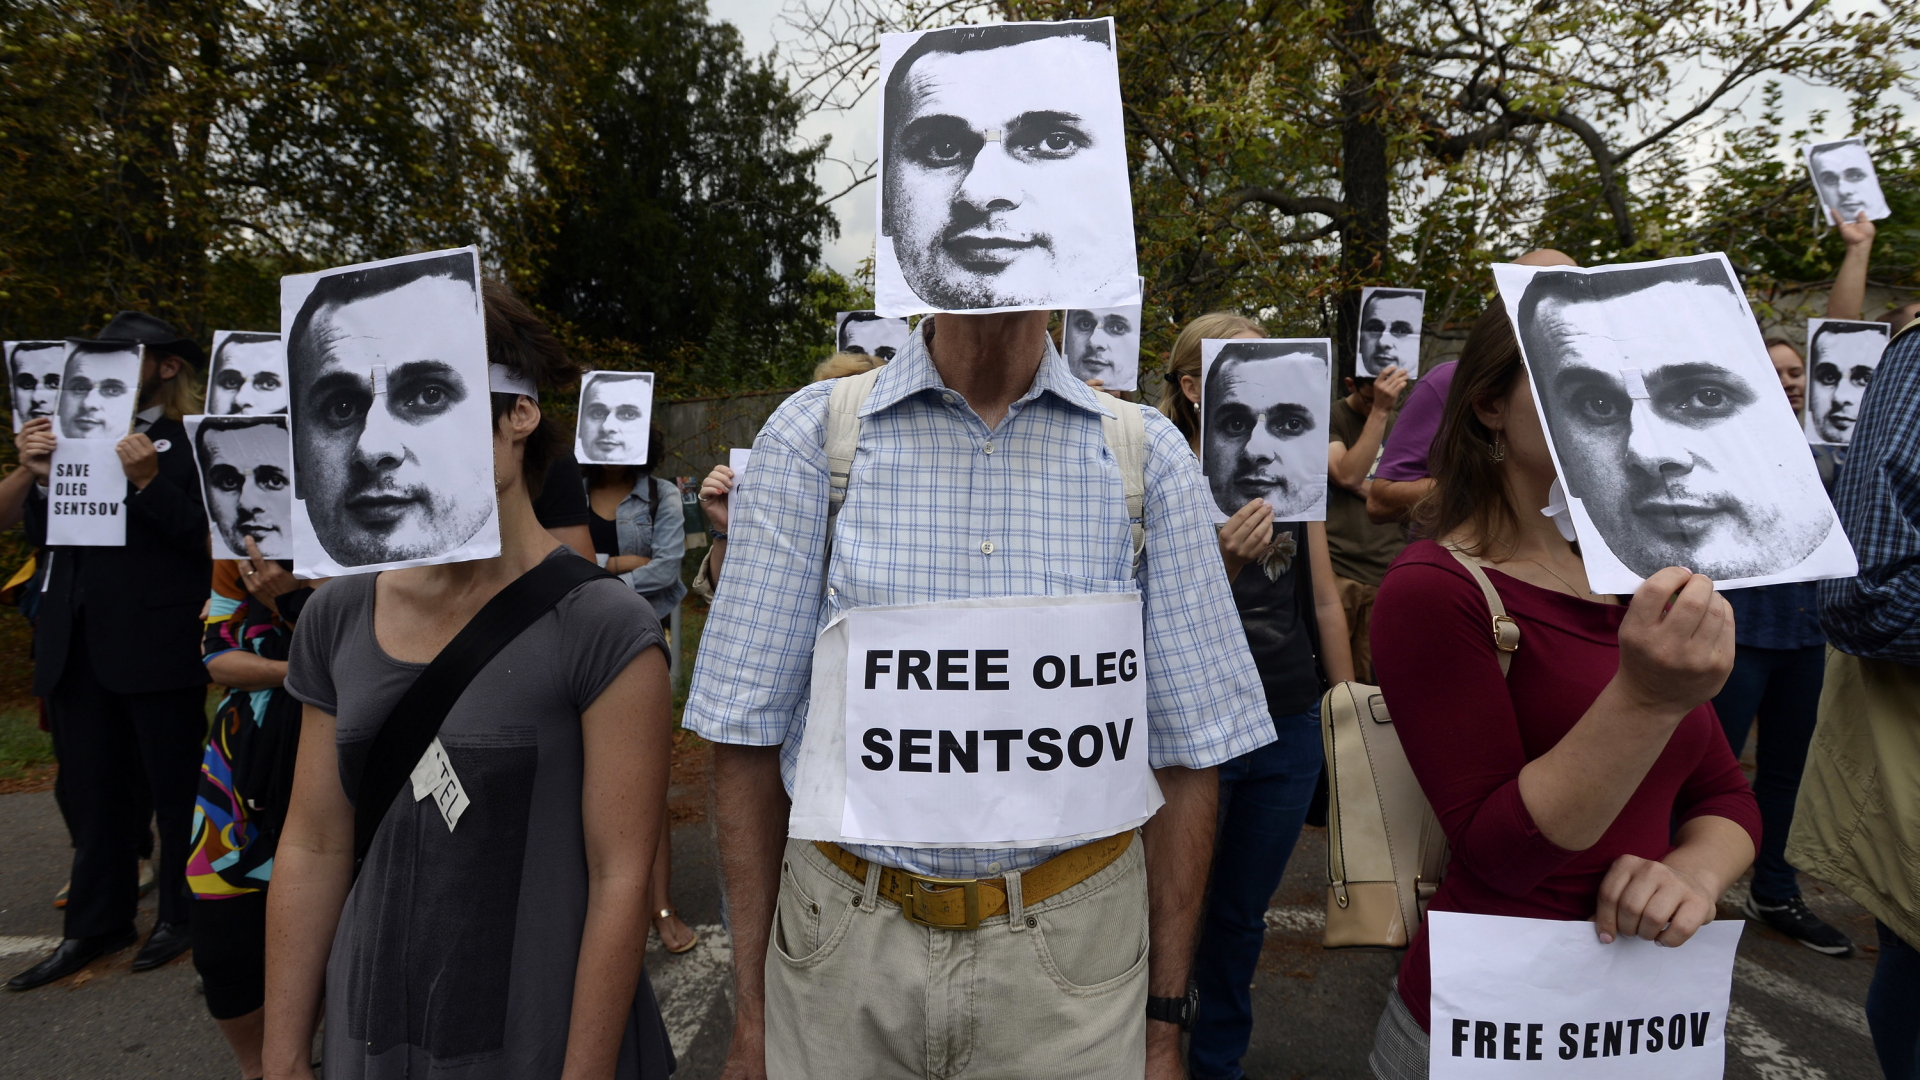 Protest für Sensow: Demonstranten tragen Masken des ukrainischen Regisseurs und fordern dessen Freilassung.